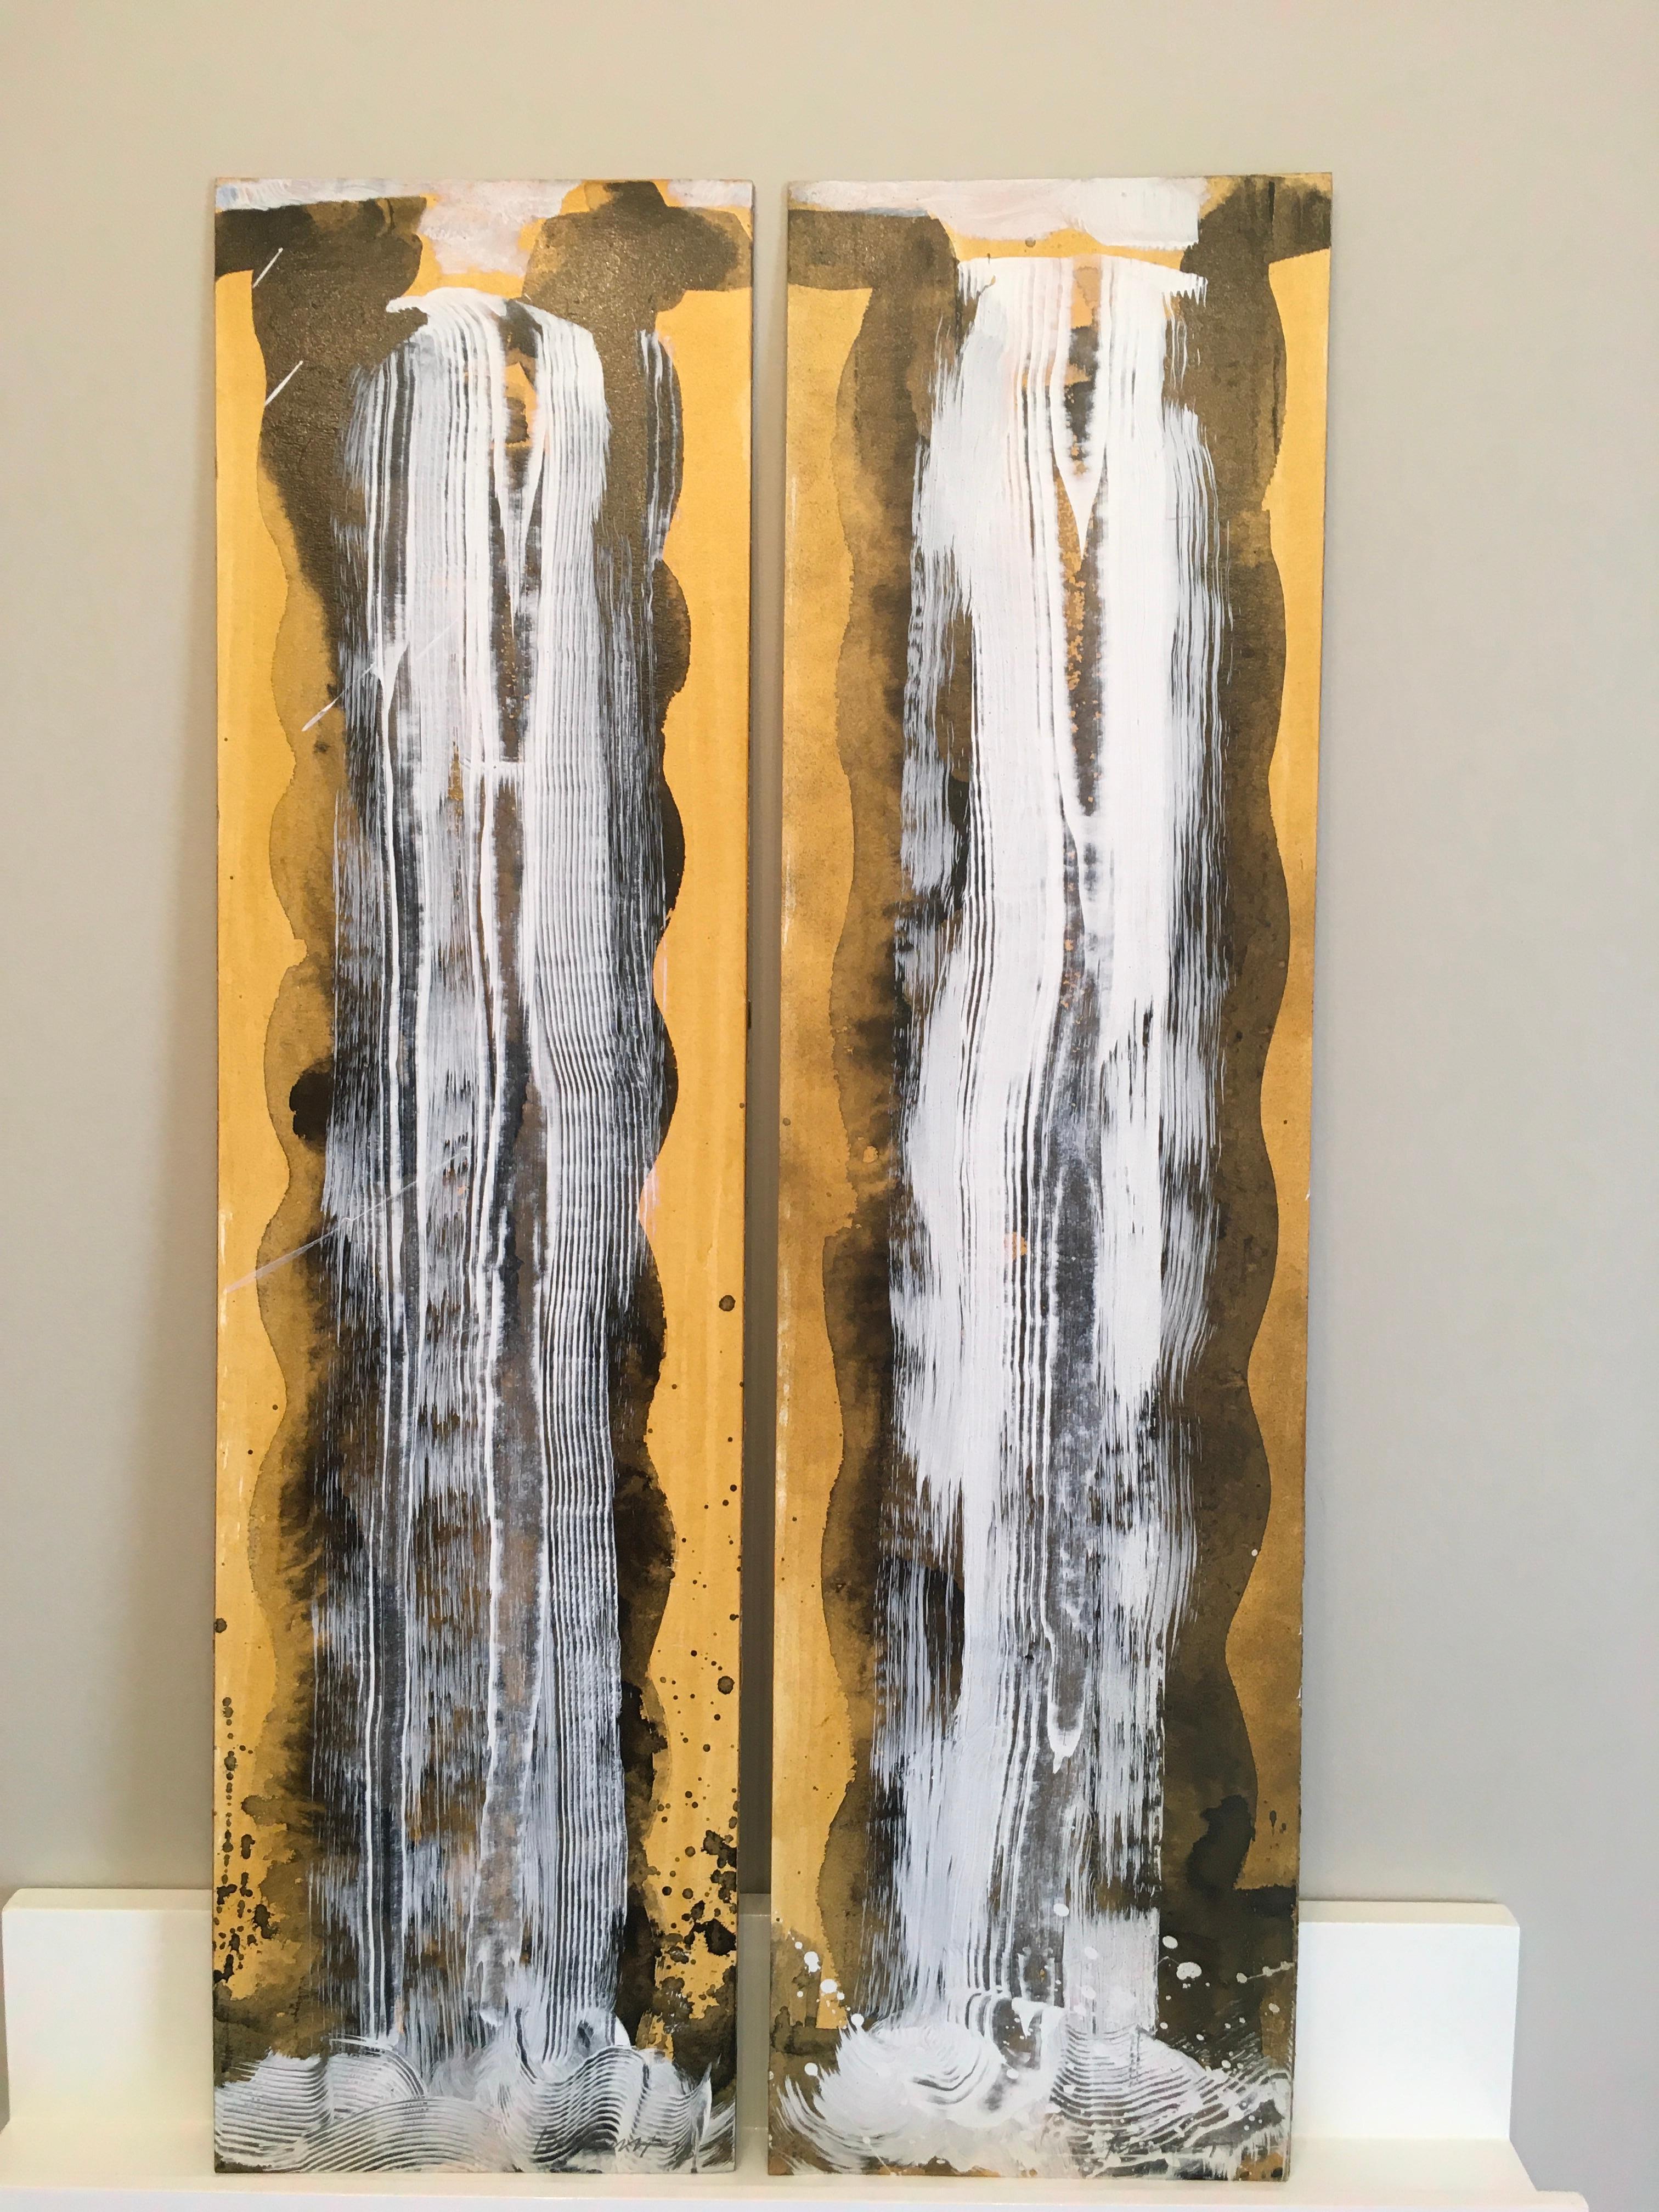 Waterfall Duet 1 est une peinture originale de cascade réalisée par l'artiste hawaïenne Carol Bennett.  Il rappelle les magnifiques chutes d'eau qui coulent dans les îles hawaïennes.  Il s'agit d'une peinture à l'acrylique, à l'huile et à la